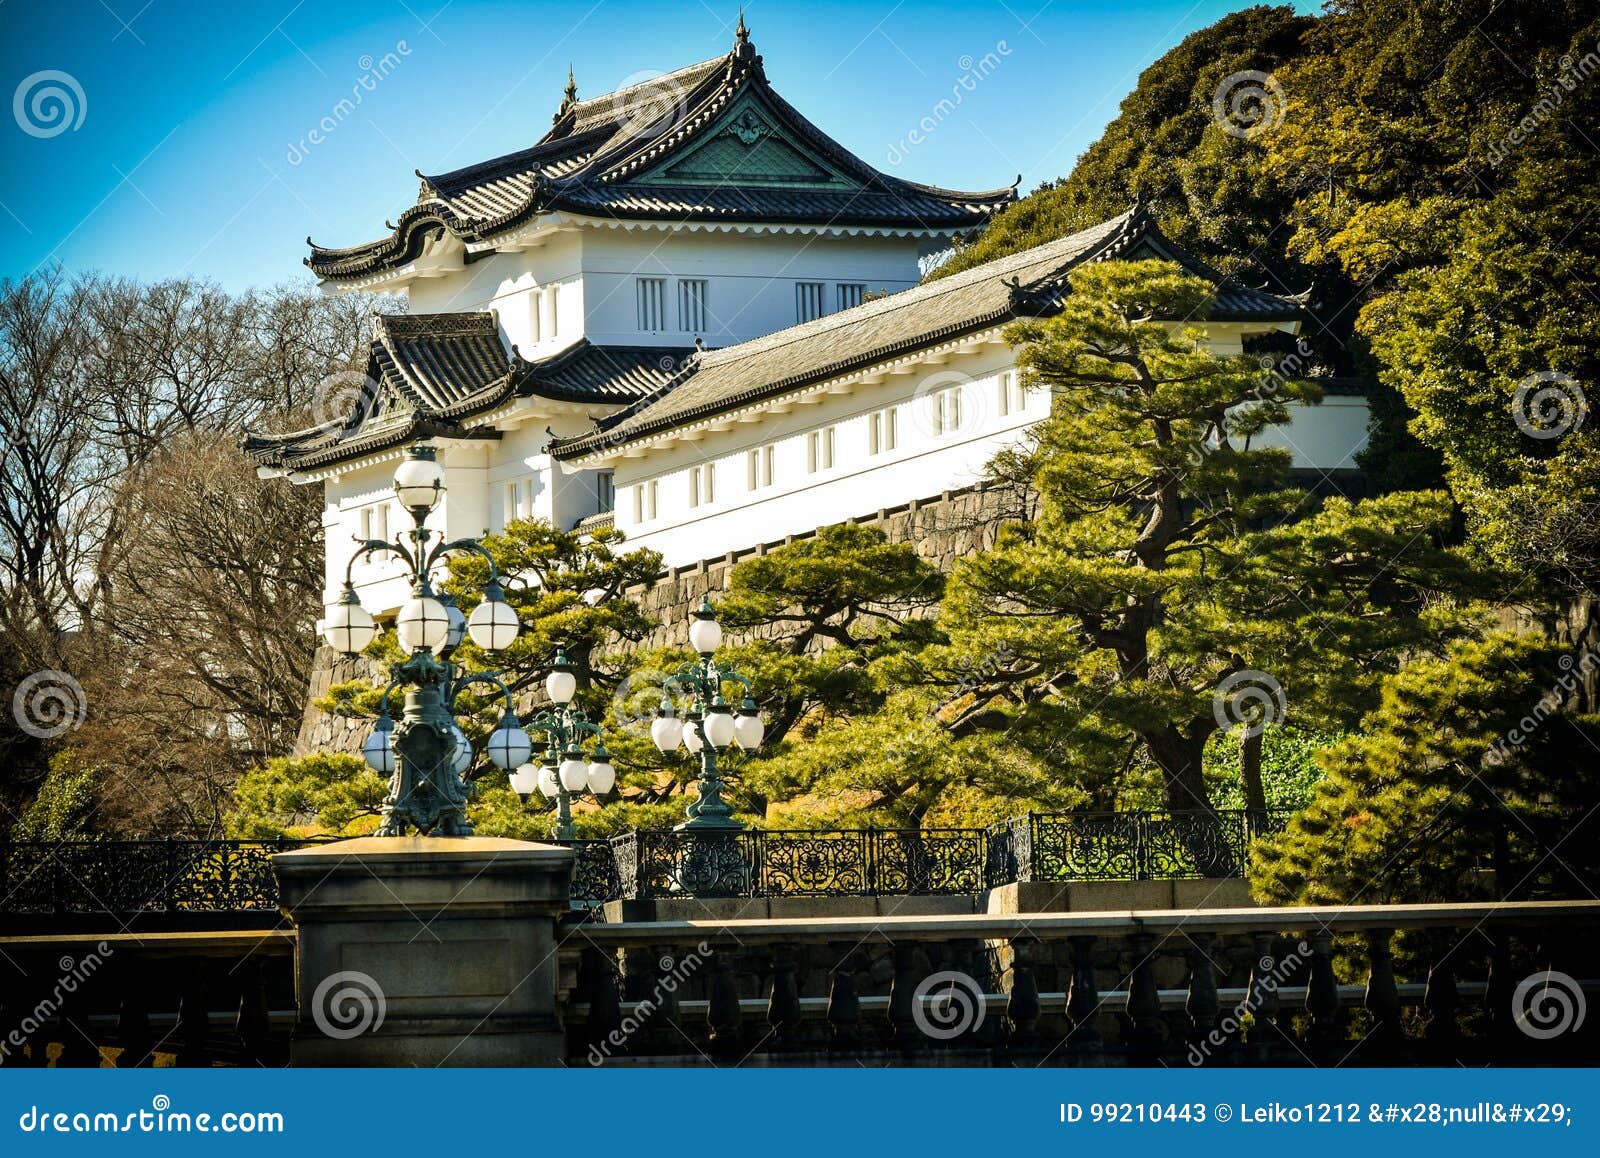 Jardim Imperial Do Toquio Do Palacio Imagem De Stock Imagem De Monumentos Jardim